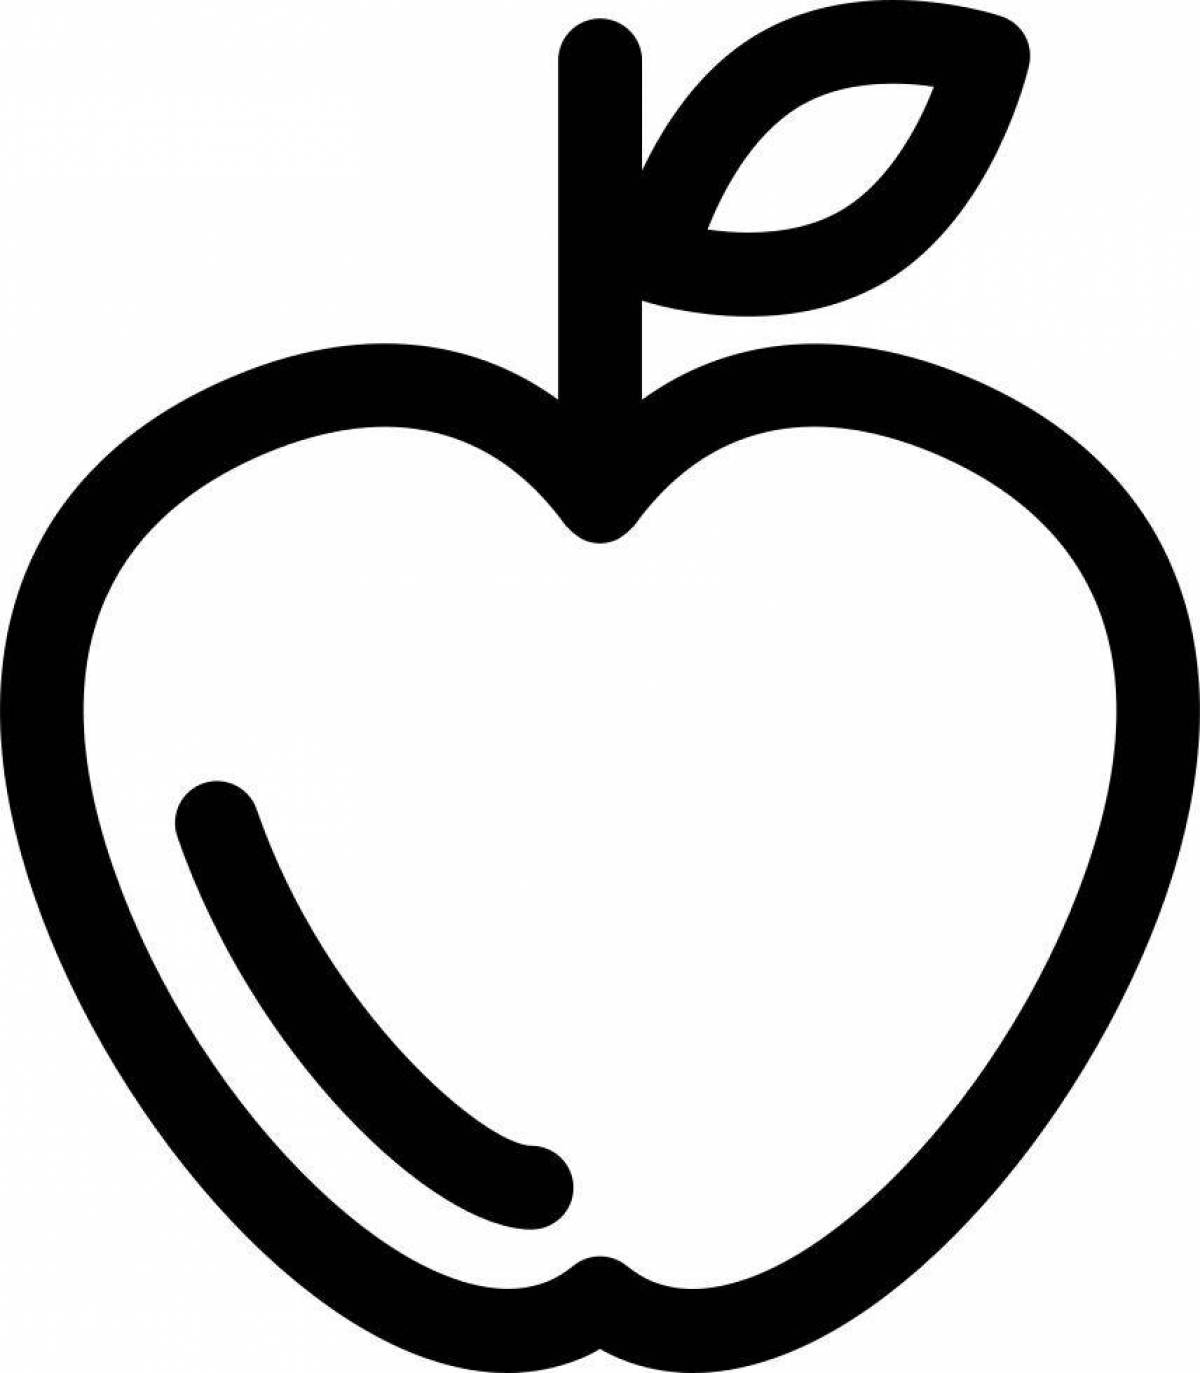 Увлекательная раскраска значка apple